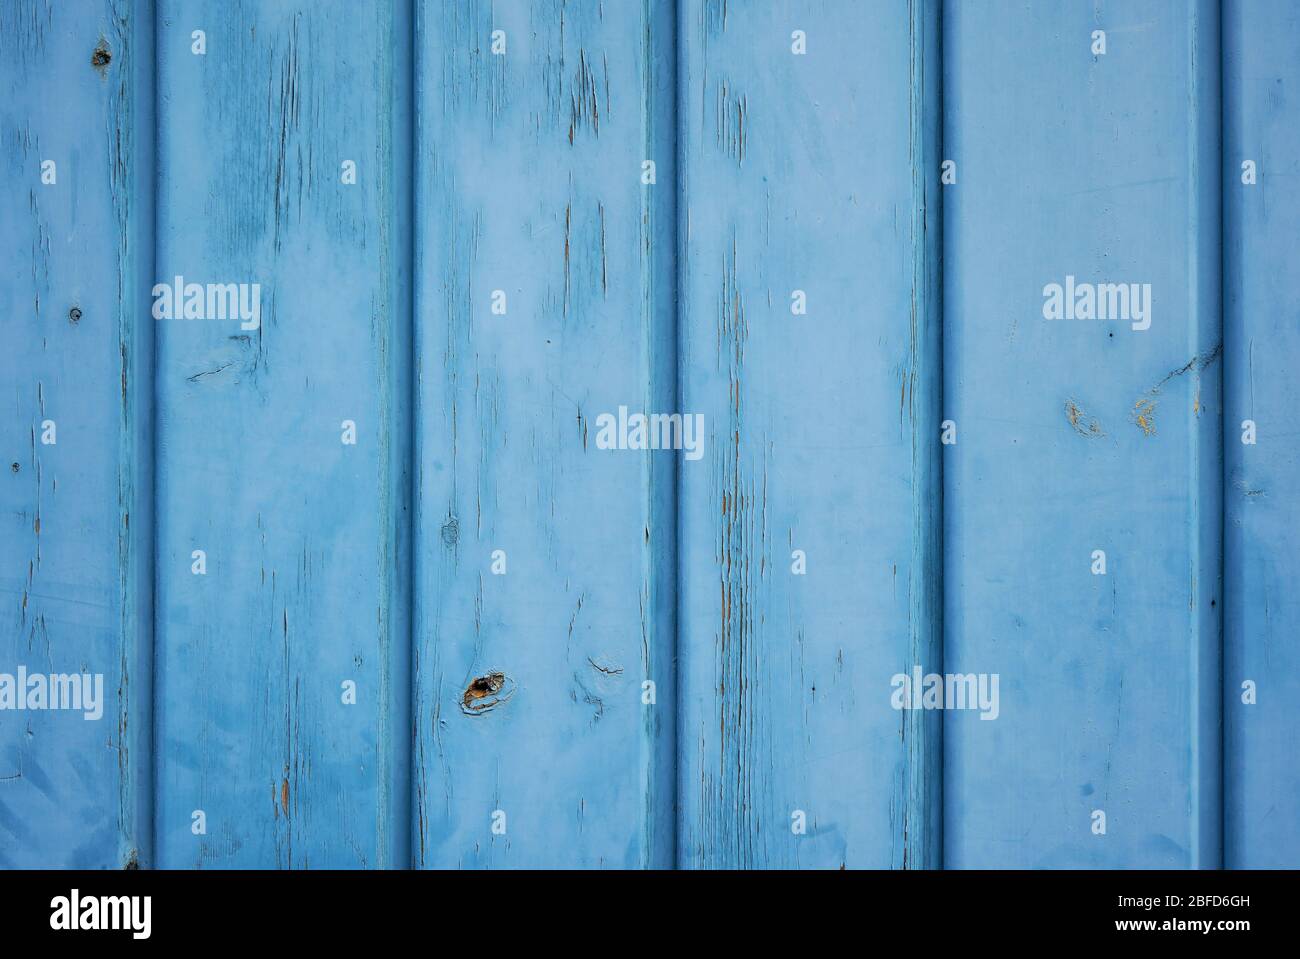 Hellblau pastellfarben Hintergrund aus gealtertem Holz mit vertikalen Brettern. Stockfoto